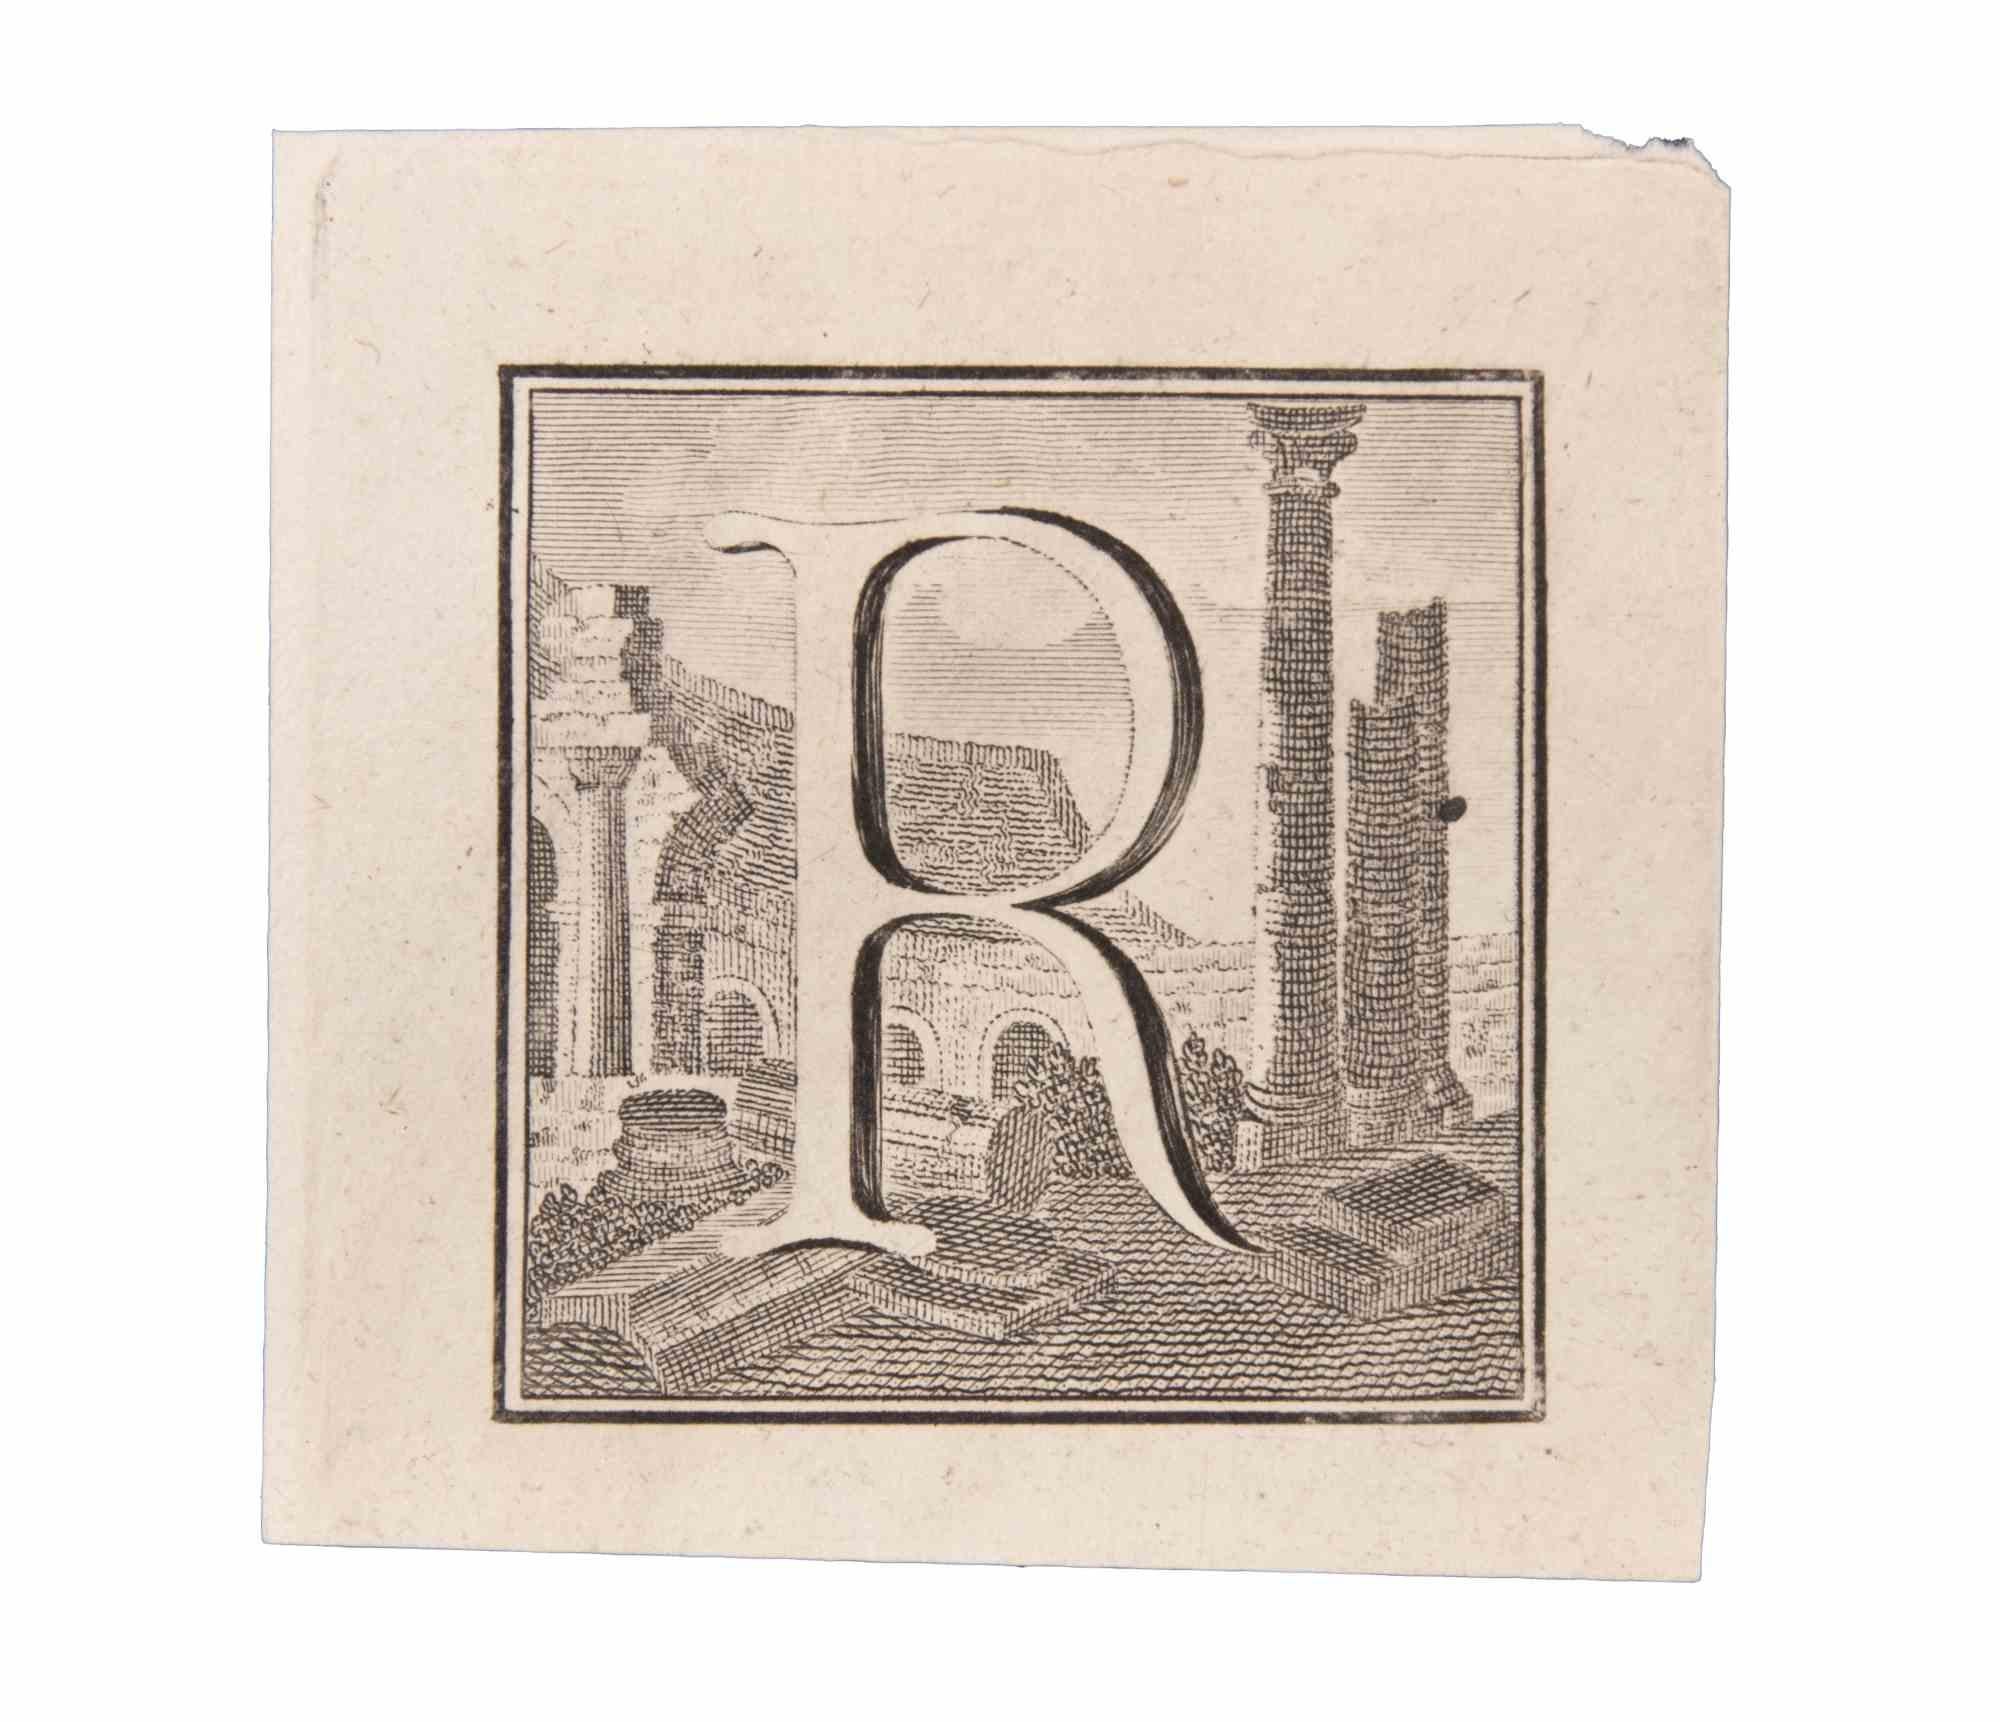 Buchstabe R ist eine Radierung von Luigi Vanvitelli Künstler des 18. Jahrhunderts realisiert.

Die Radierung gehört zu der Druckserie "Antiquities of Herculaneum Exposed" (Originaltitel: "Le Antichità di Ercolano Esposte"), einem achtbändigen Band